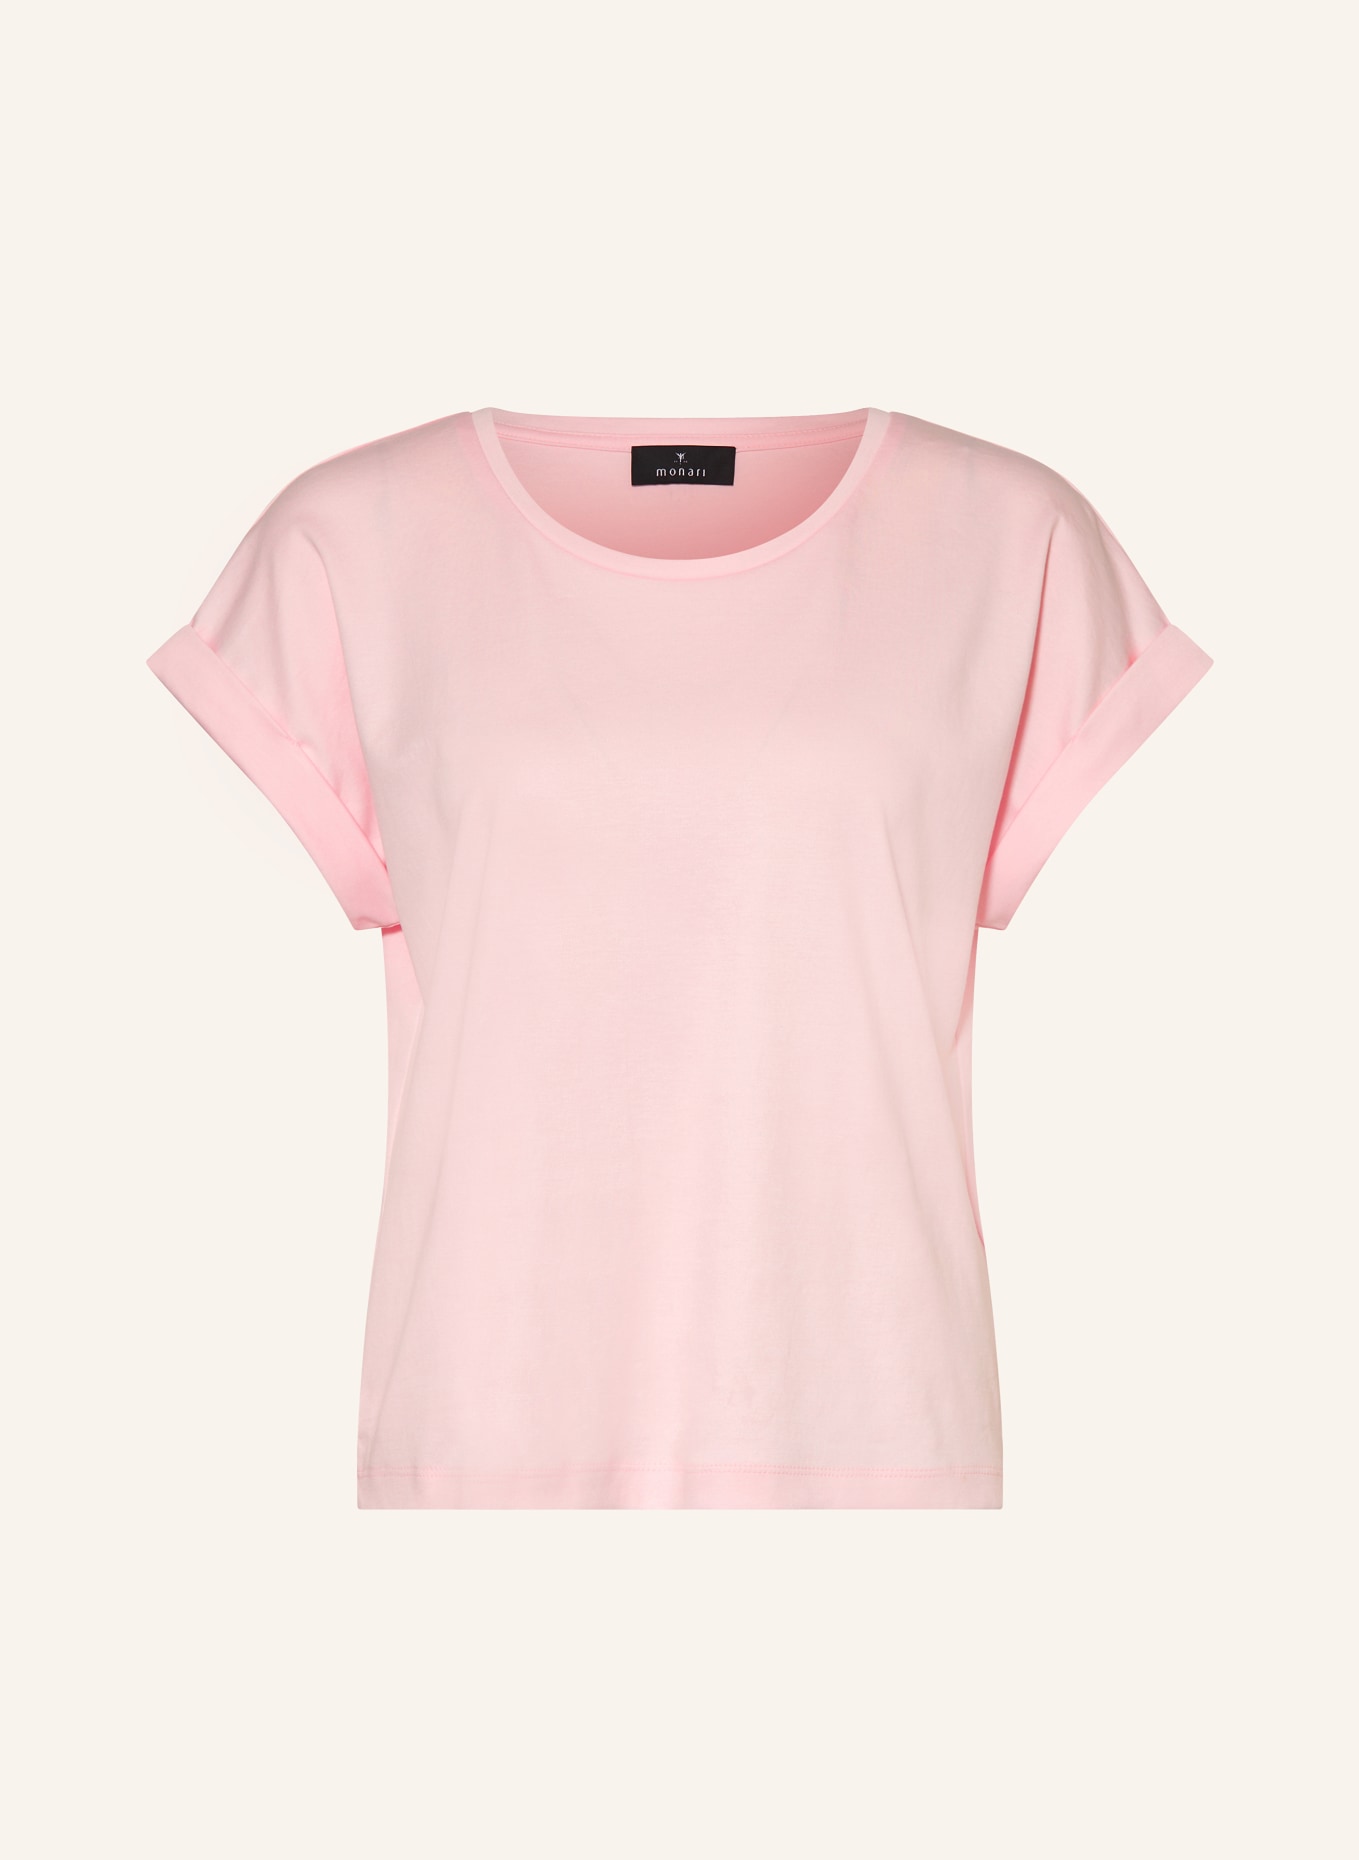 monari T-Shirt, Farbe: ROSA (Bild 1)